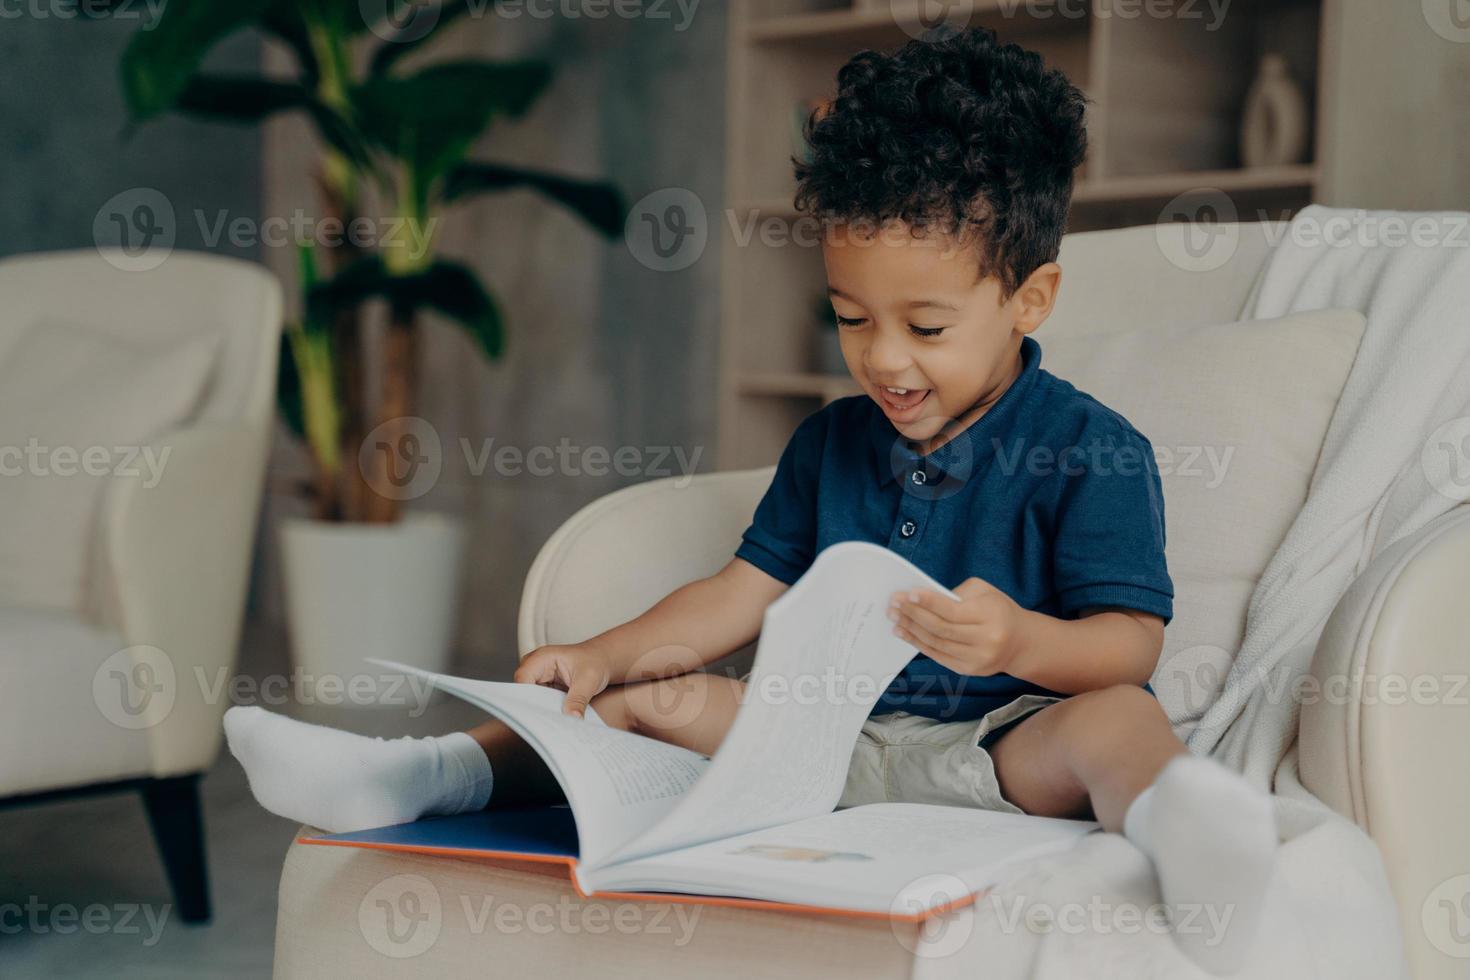 criança de raça mista feliz com cabelo encaracolado bonito lendo livro em casa foto